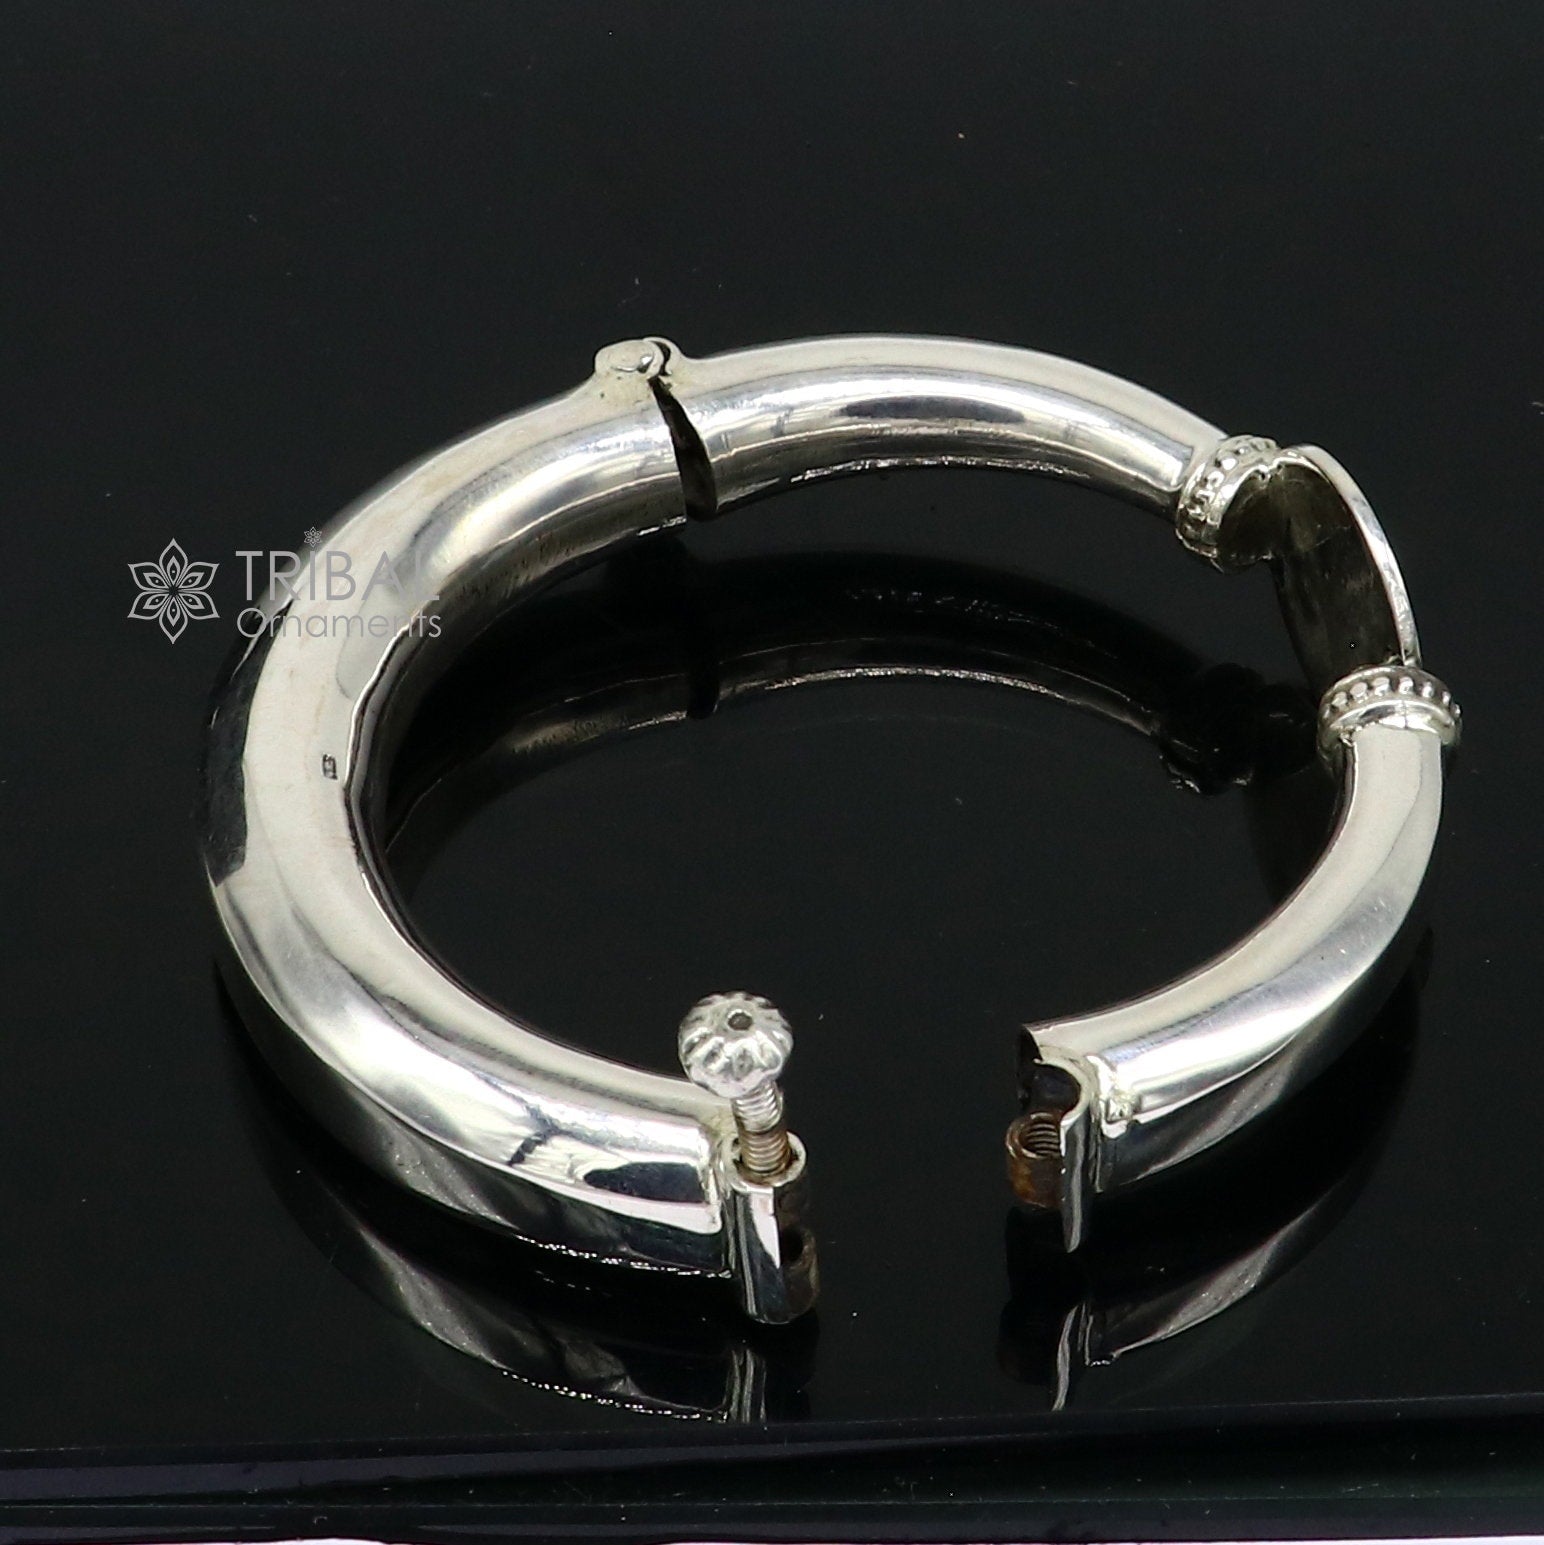 Unique vintage design 925 sterling silver vintage plain design handmade bangle bracelet kada cuff bracelet ethnic Banjara jewelry nsk731 - TRIBAL ORNAMENTS